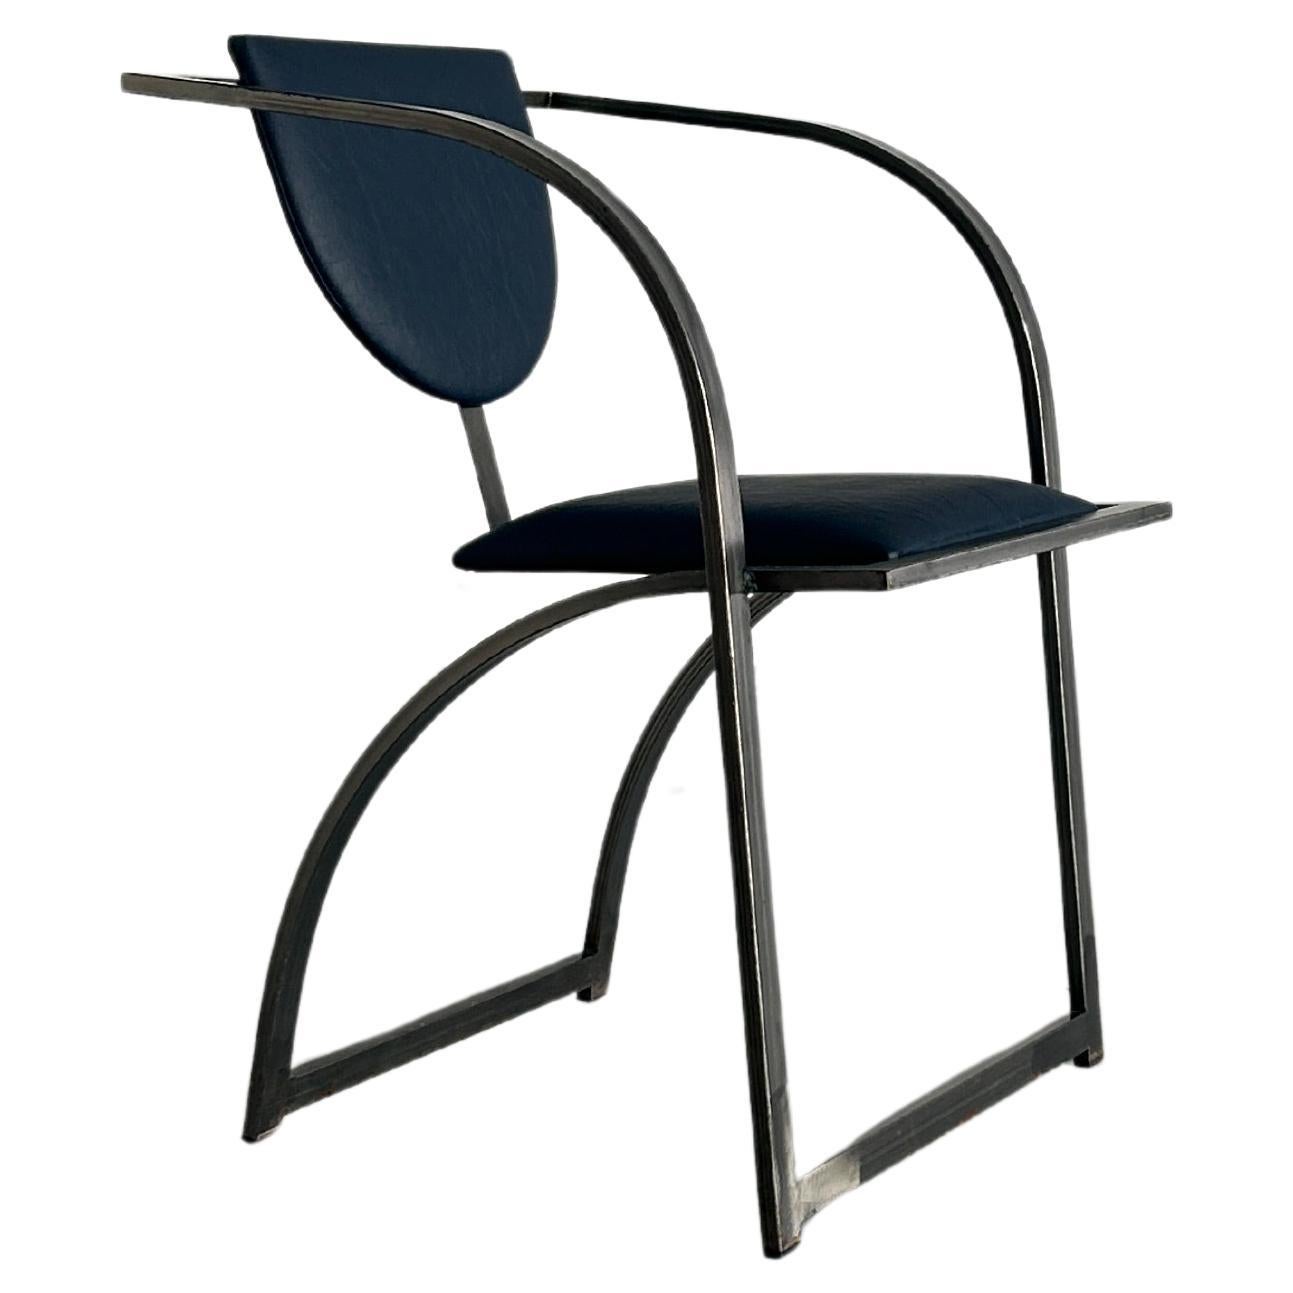 Memphis Design Postmodern Geometrical 'Cosinus' Chair by KFF, 80s Germany